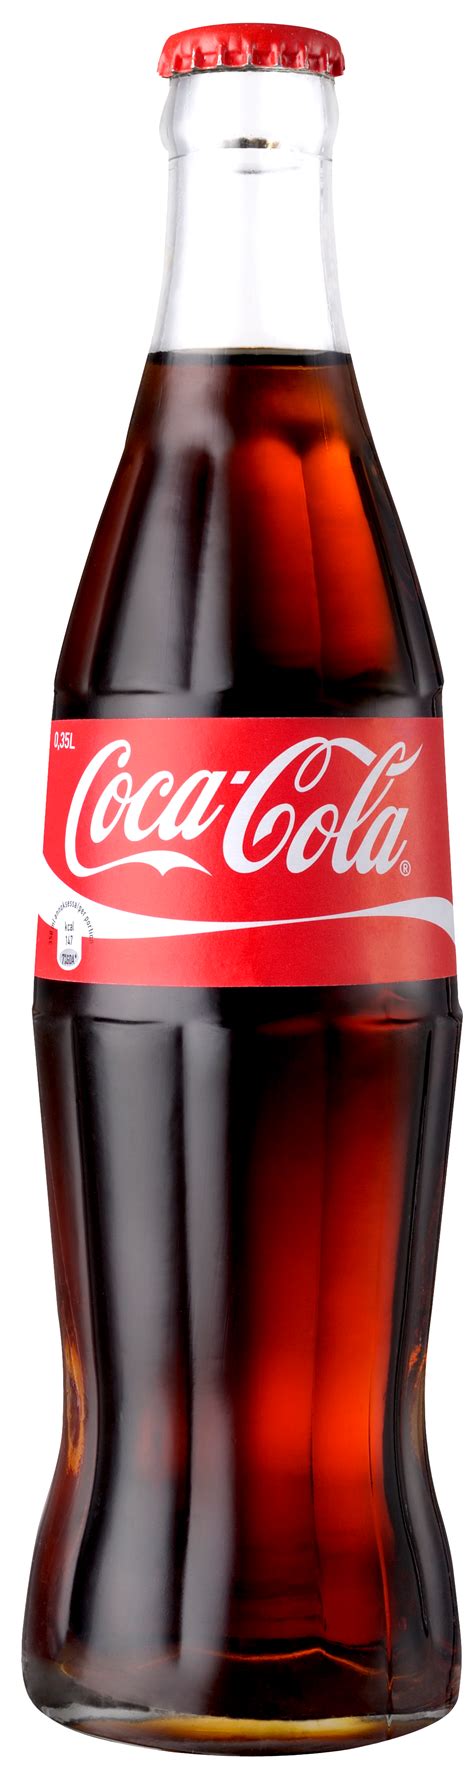 Imagens De Coca Cola Png - img-poplar